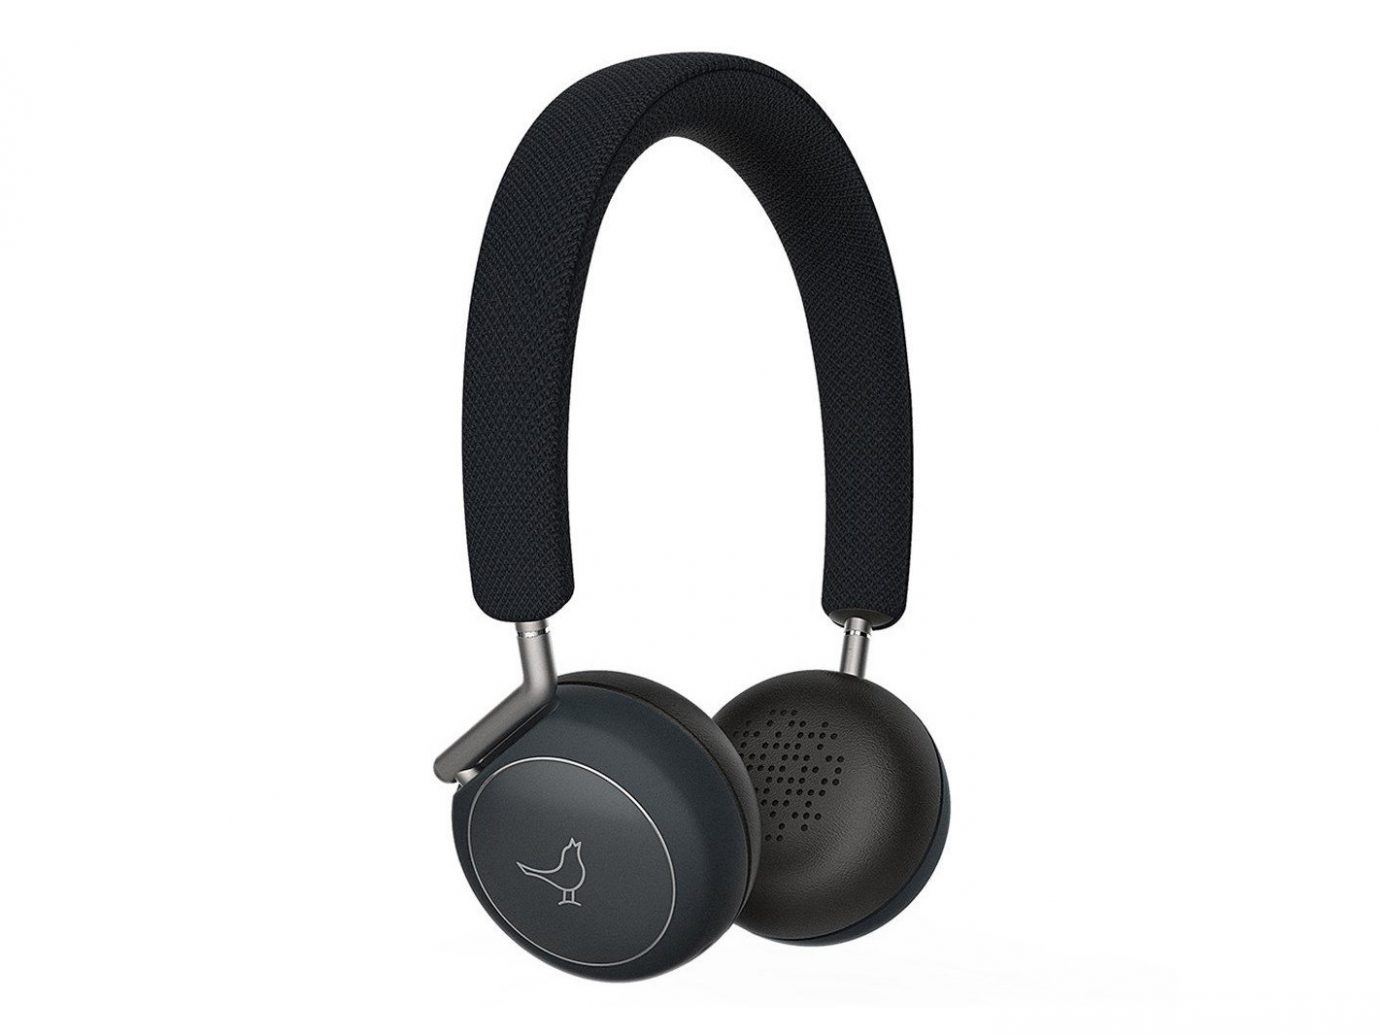 Buy Libratone Q Adapt On-Ear Wireless Headphones on Amazon